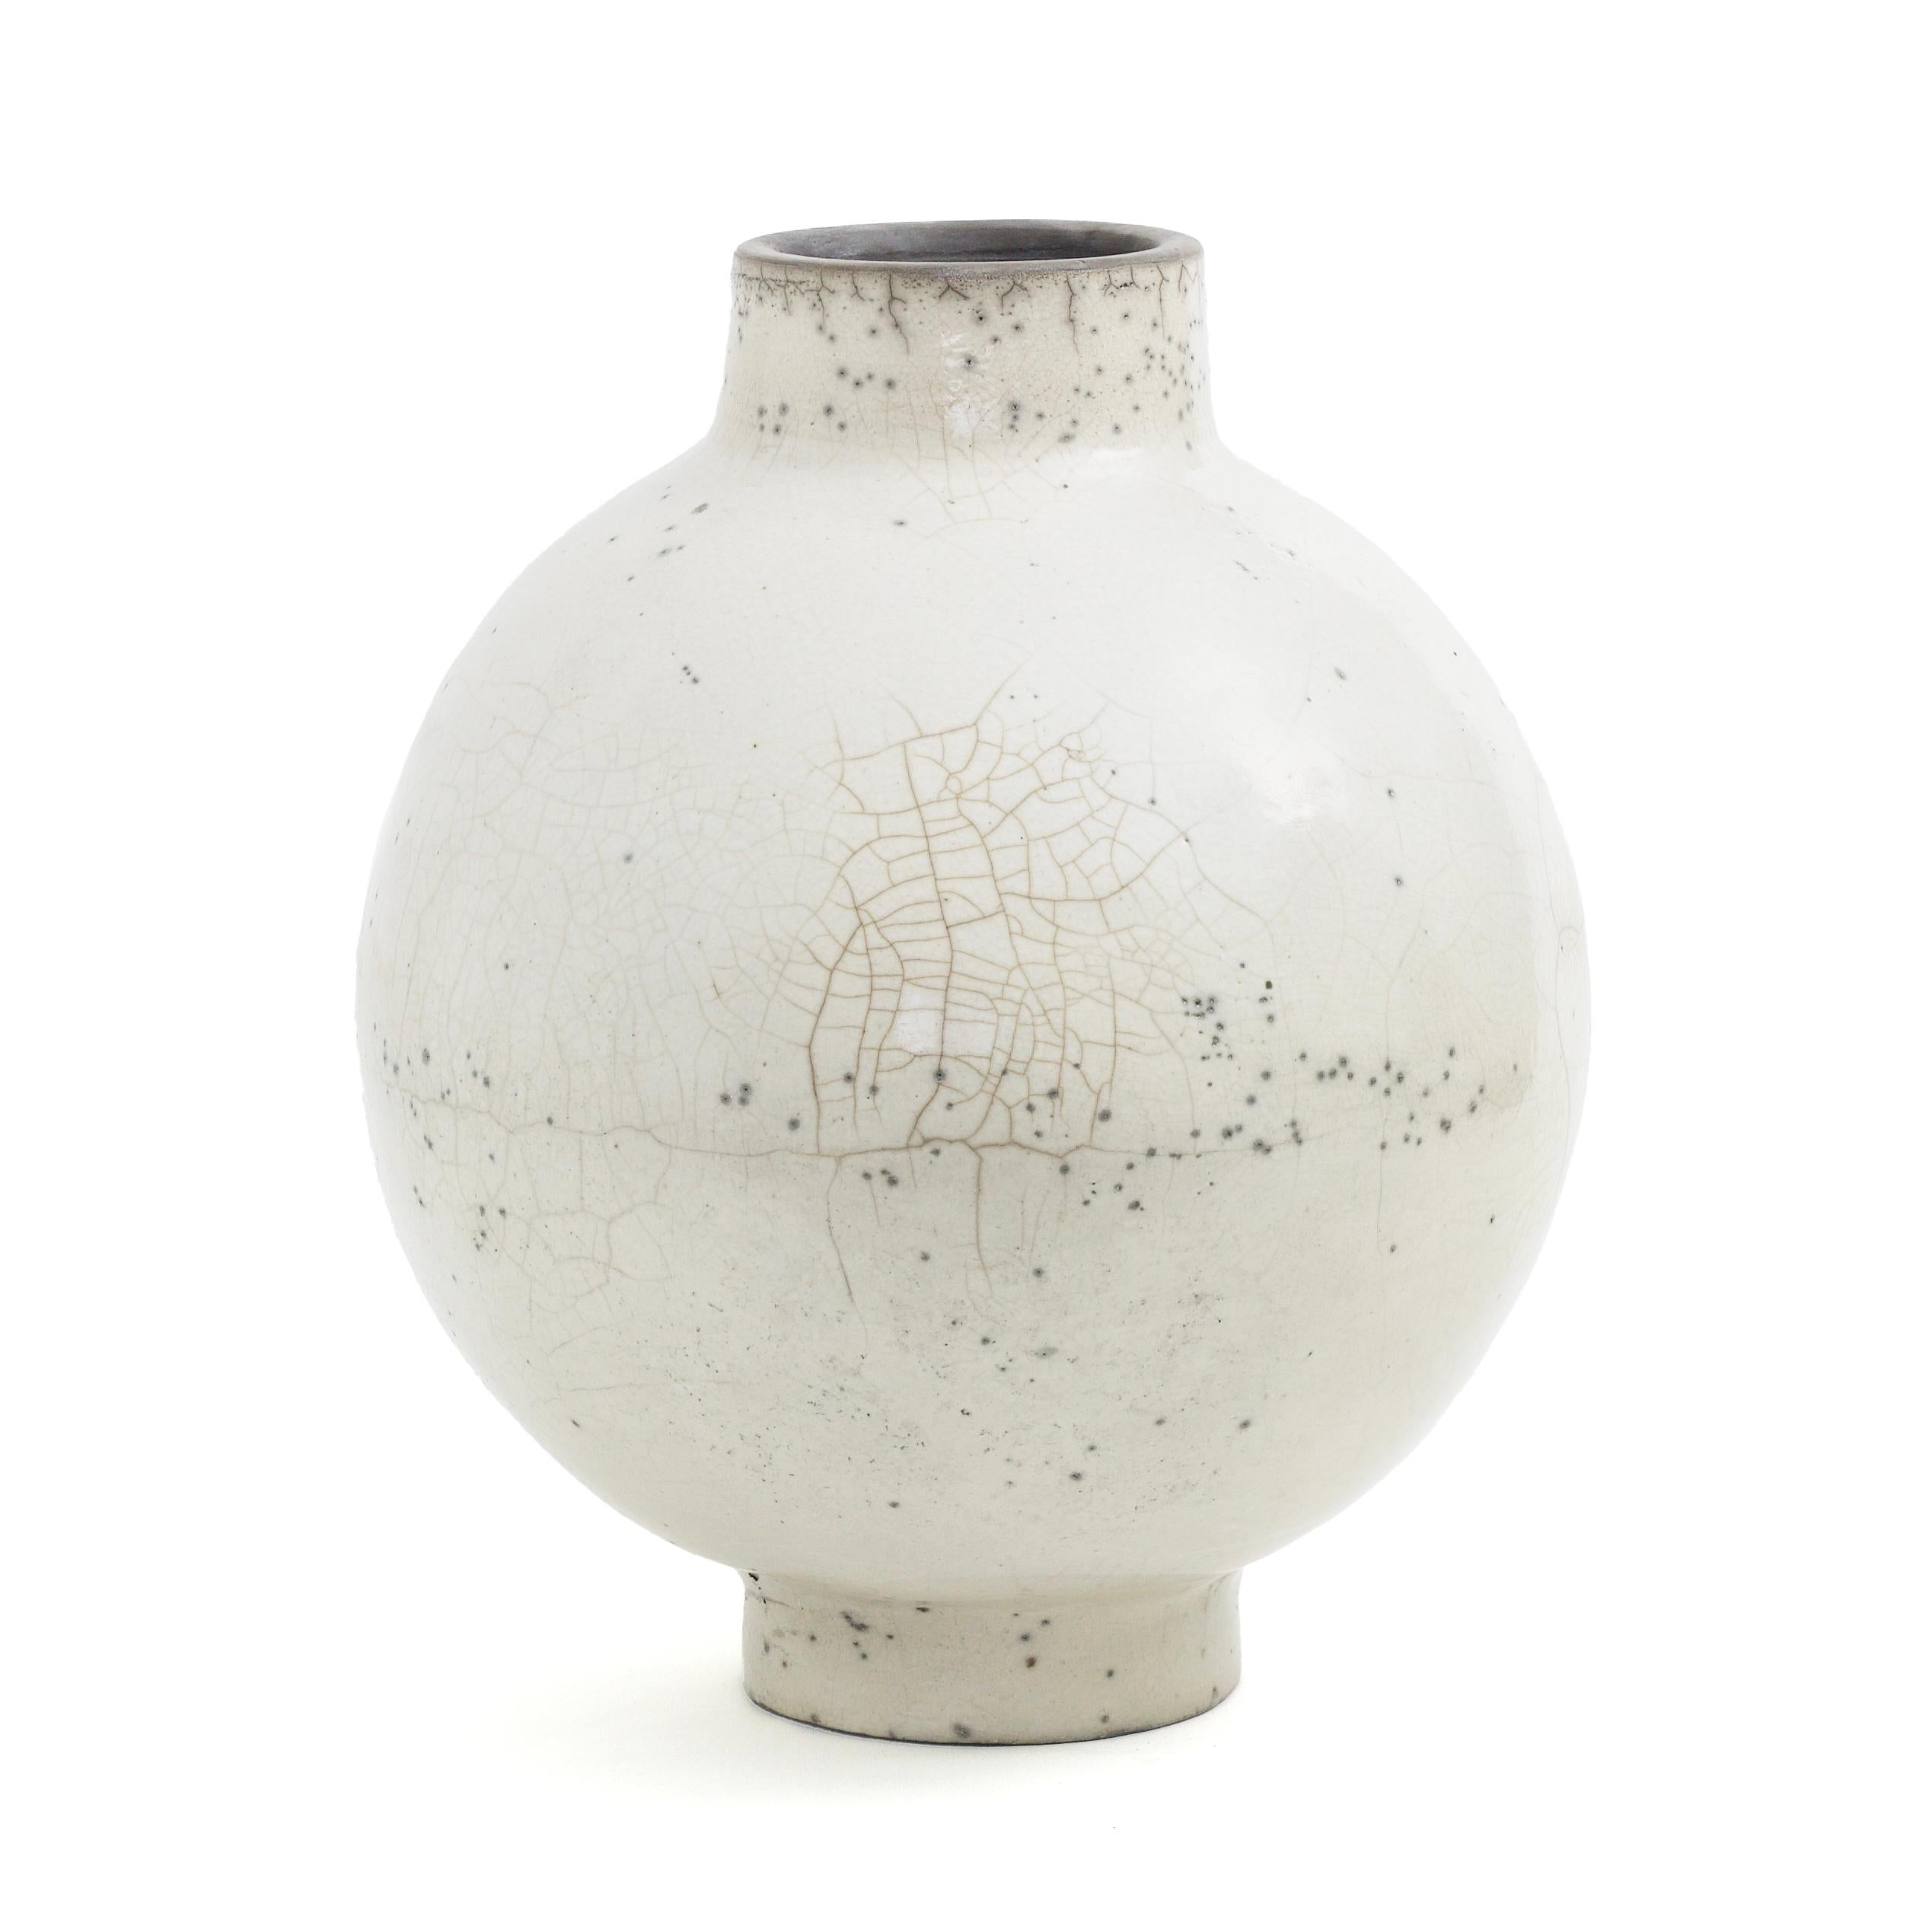 Kuppel L Vase

Ein bauchiger Körper mit großzügigen Kurven und winzigen dunklen Sprenkeln kennzeichnet diese exquisite Keramikvase, deren charakteristische, zarte Risse auf die geschickte Anwendung der alten japanischen Raku-Technik zurückzuführen